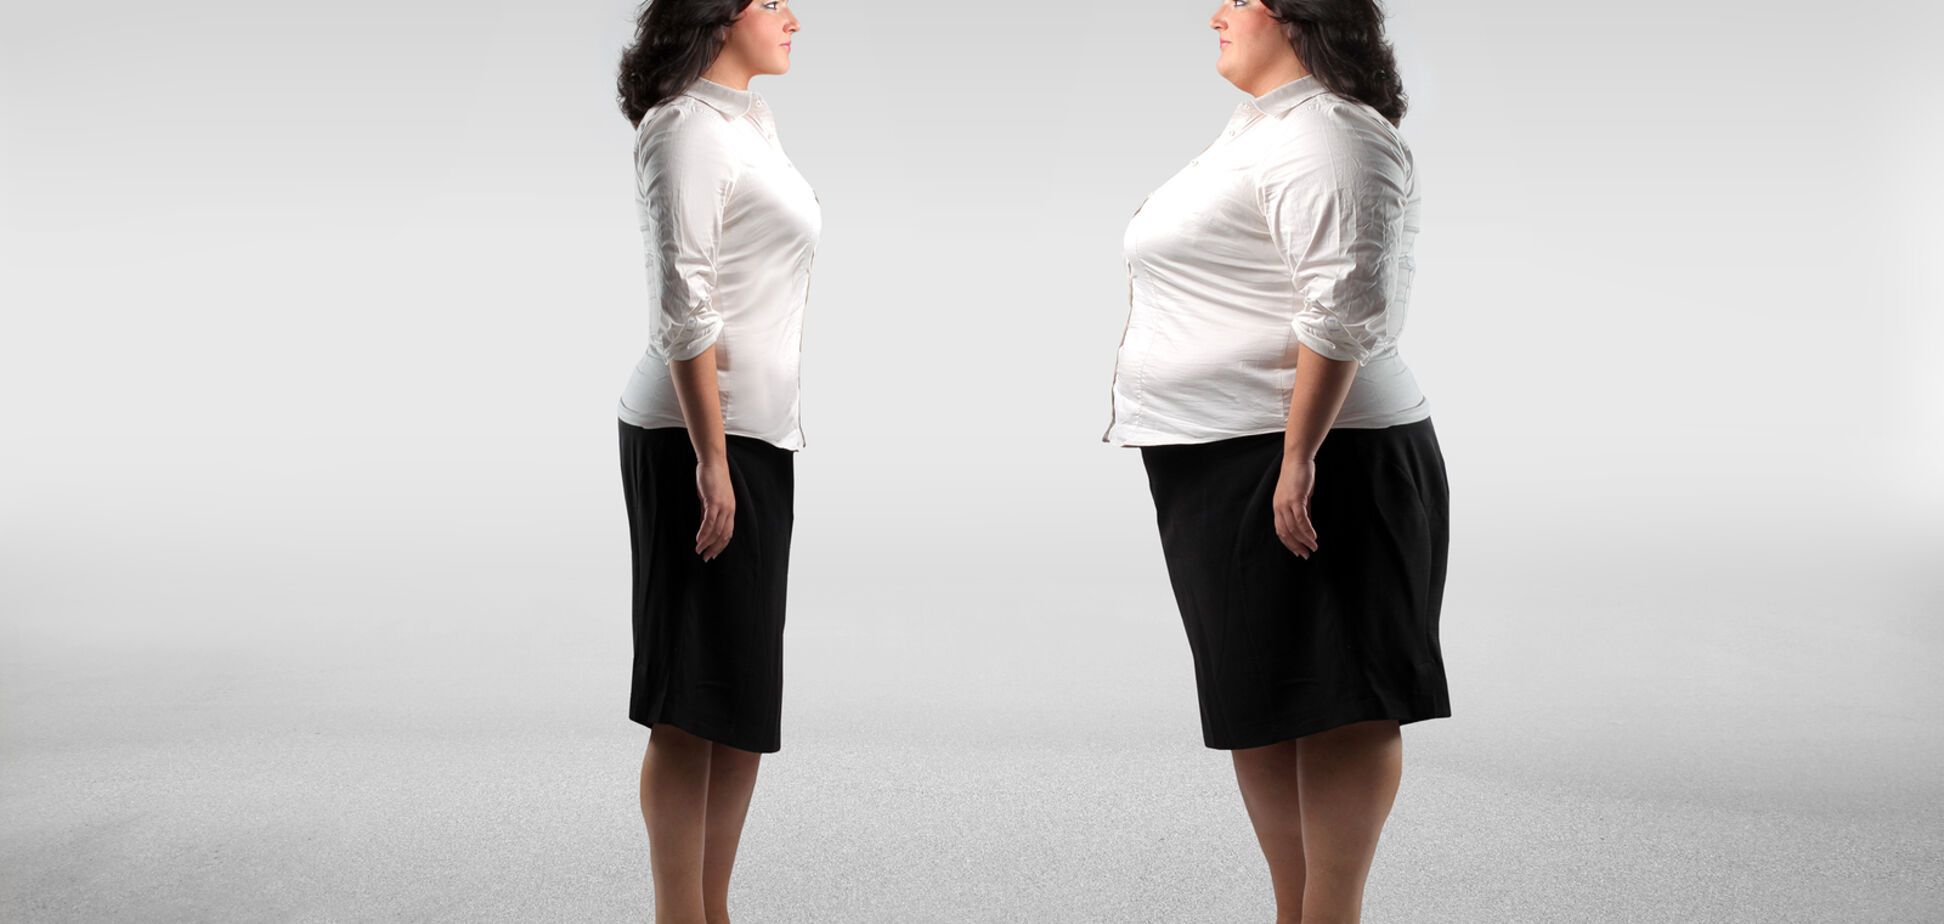 Оправдание лишнего веса: как с этим бороться